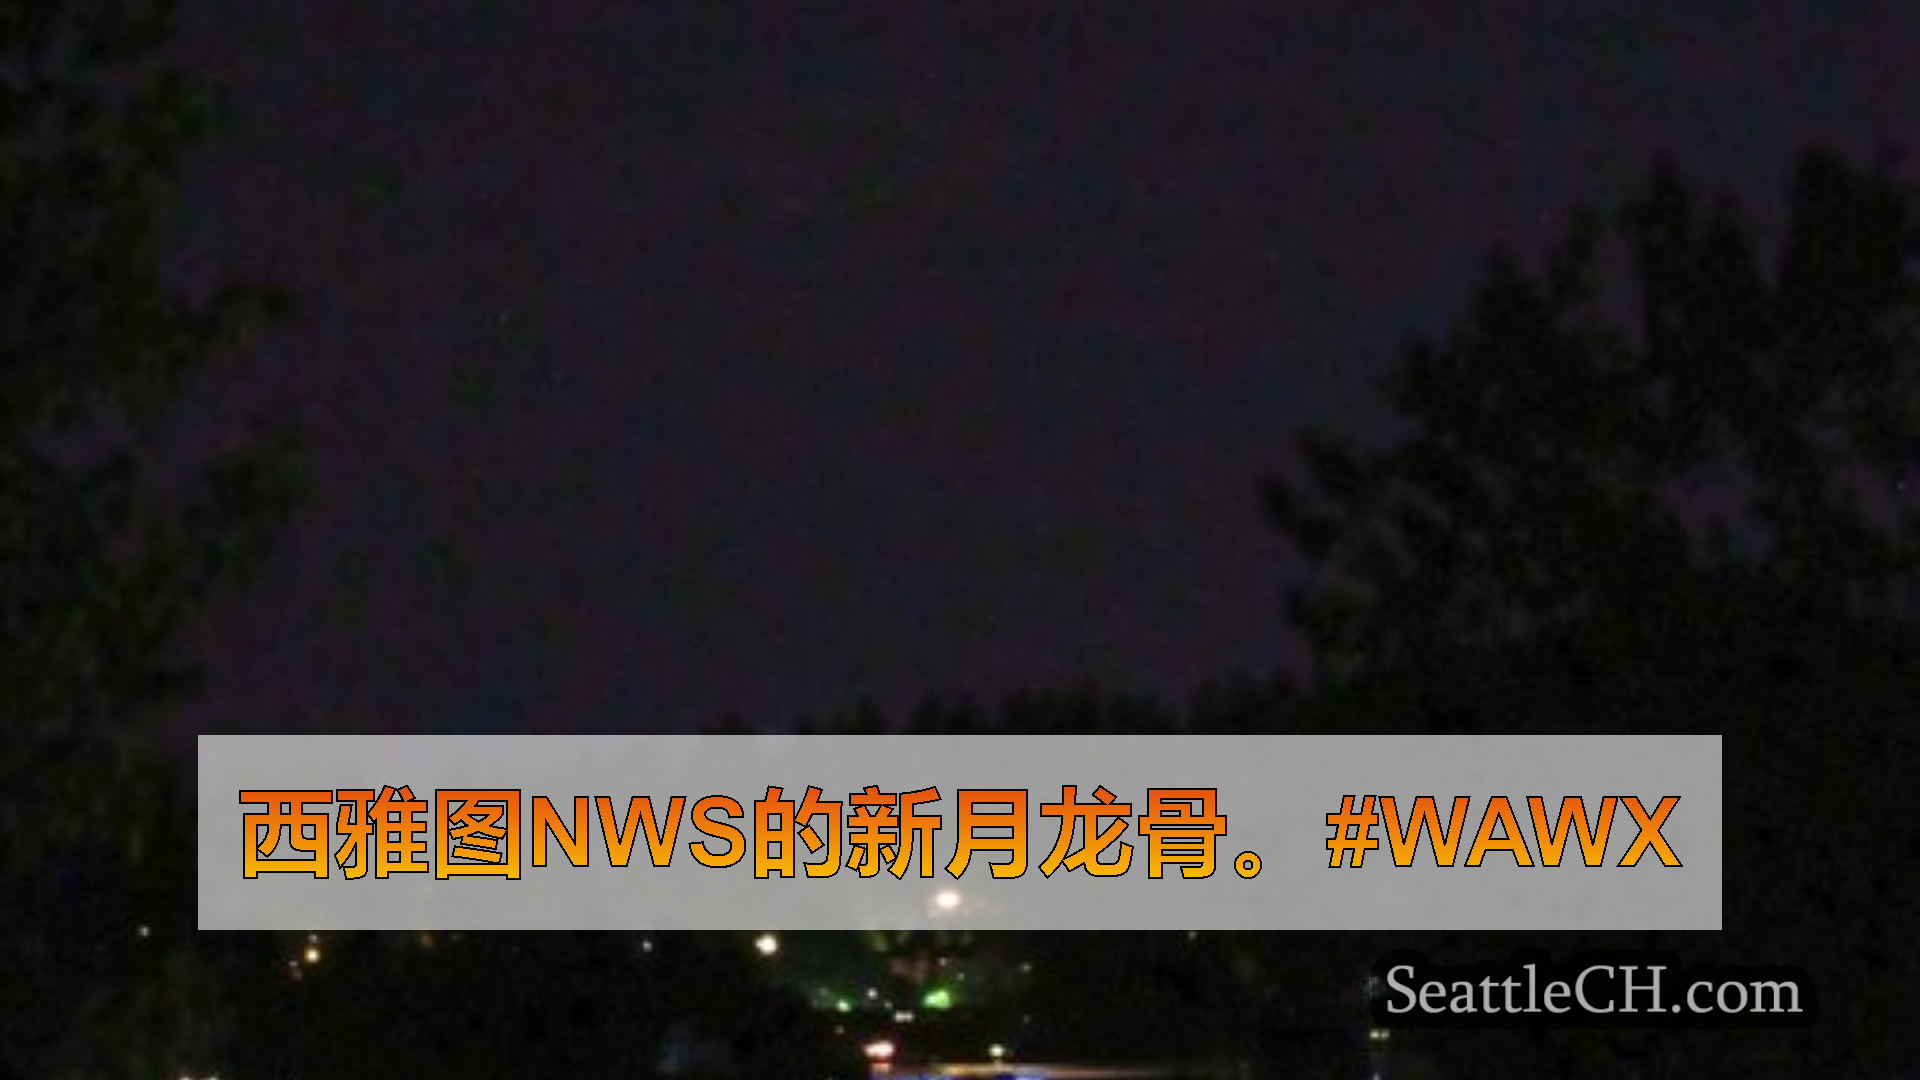 西雅图天气新闻 西雅图NWS的新月龙骨。#wawx